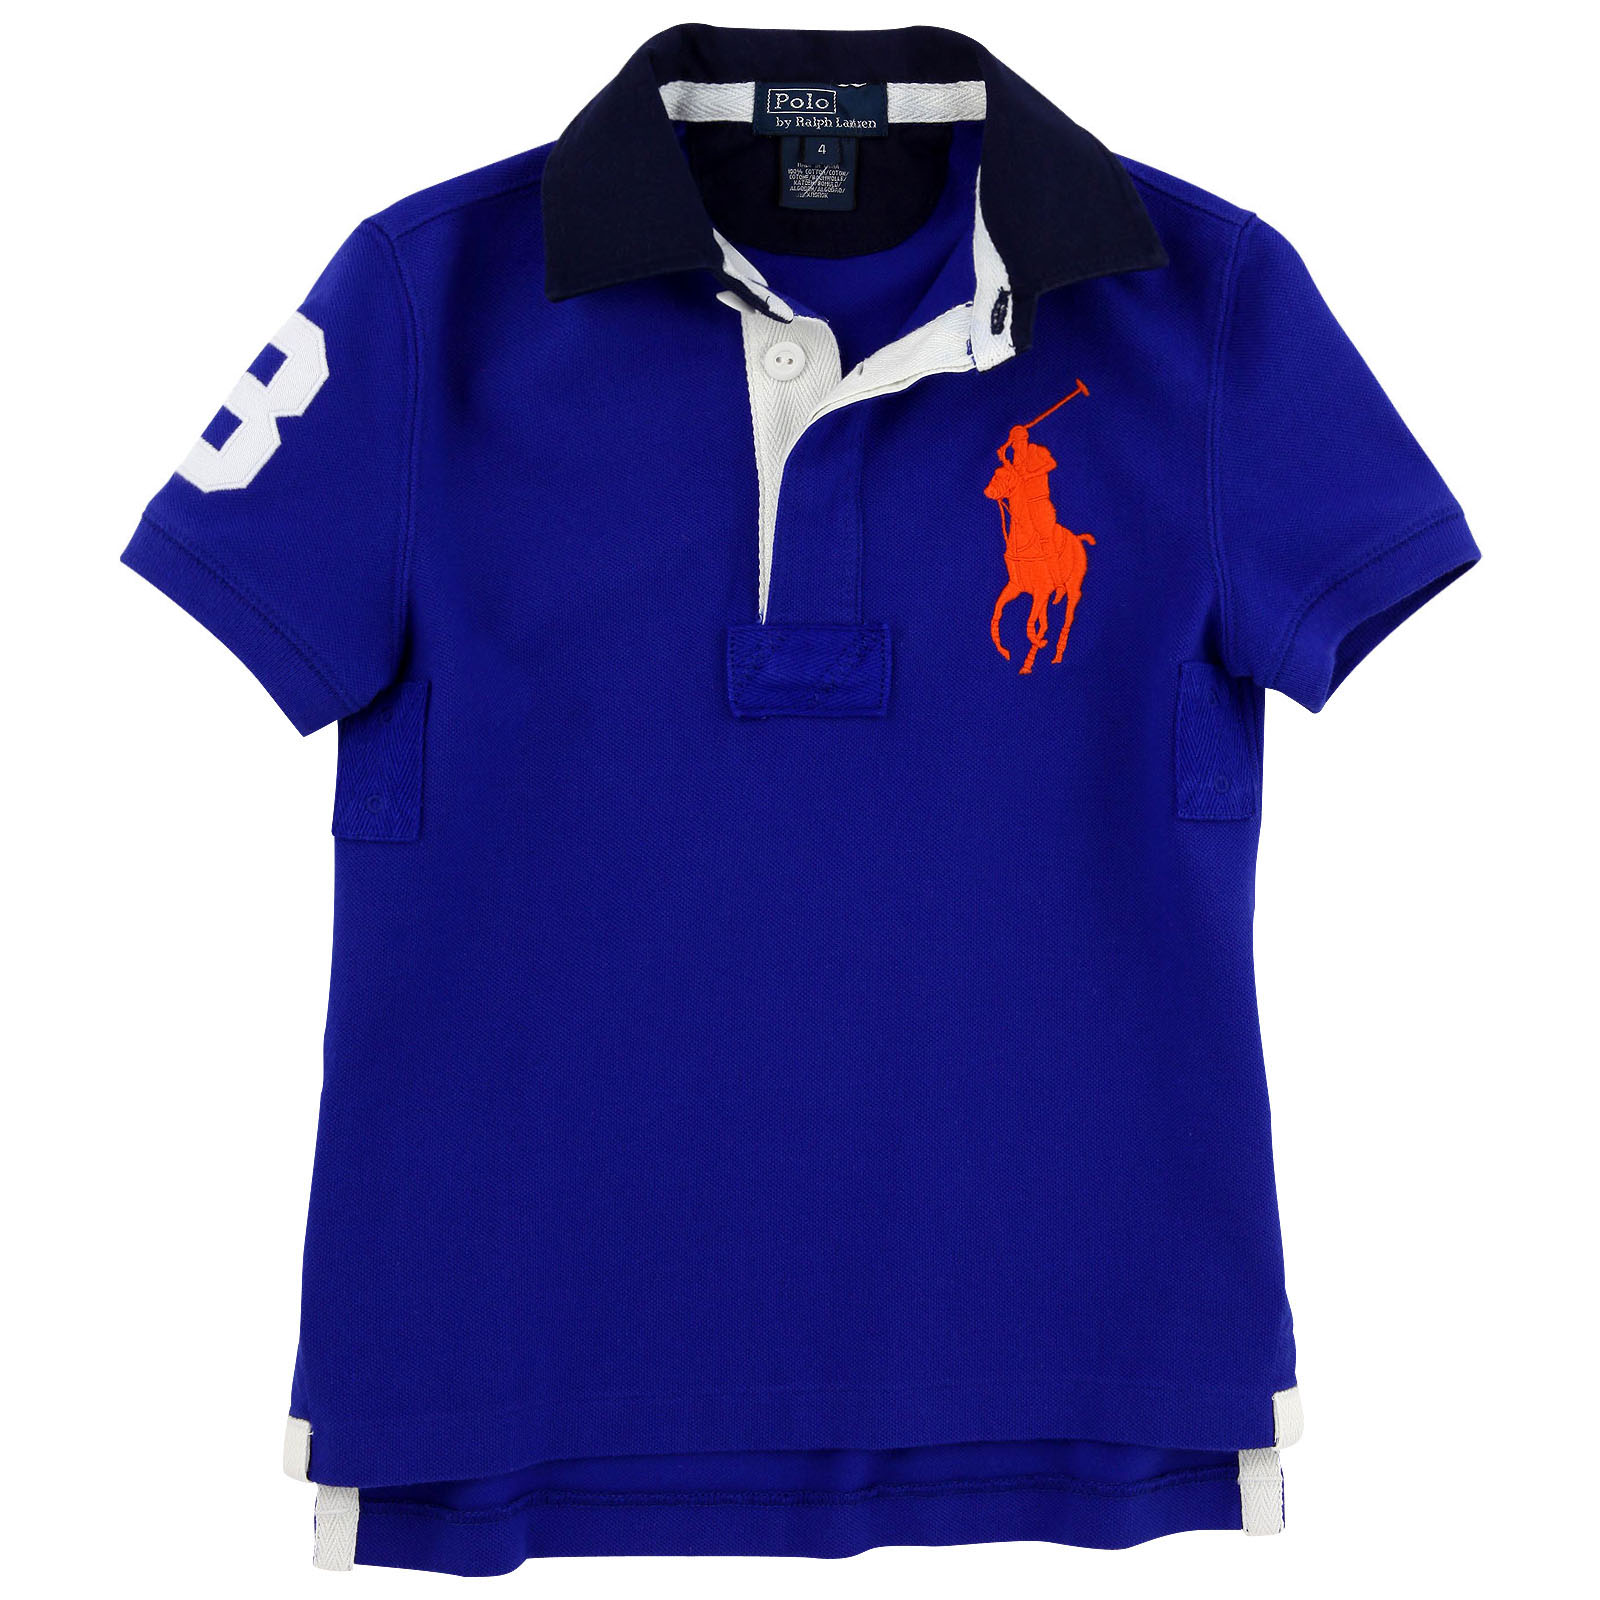 Polo Ralph Lauren Shirts - ClipArt Best